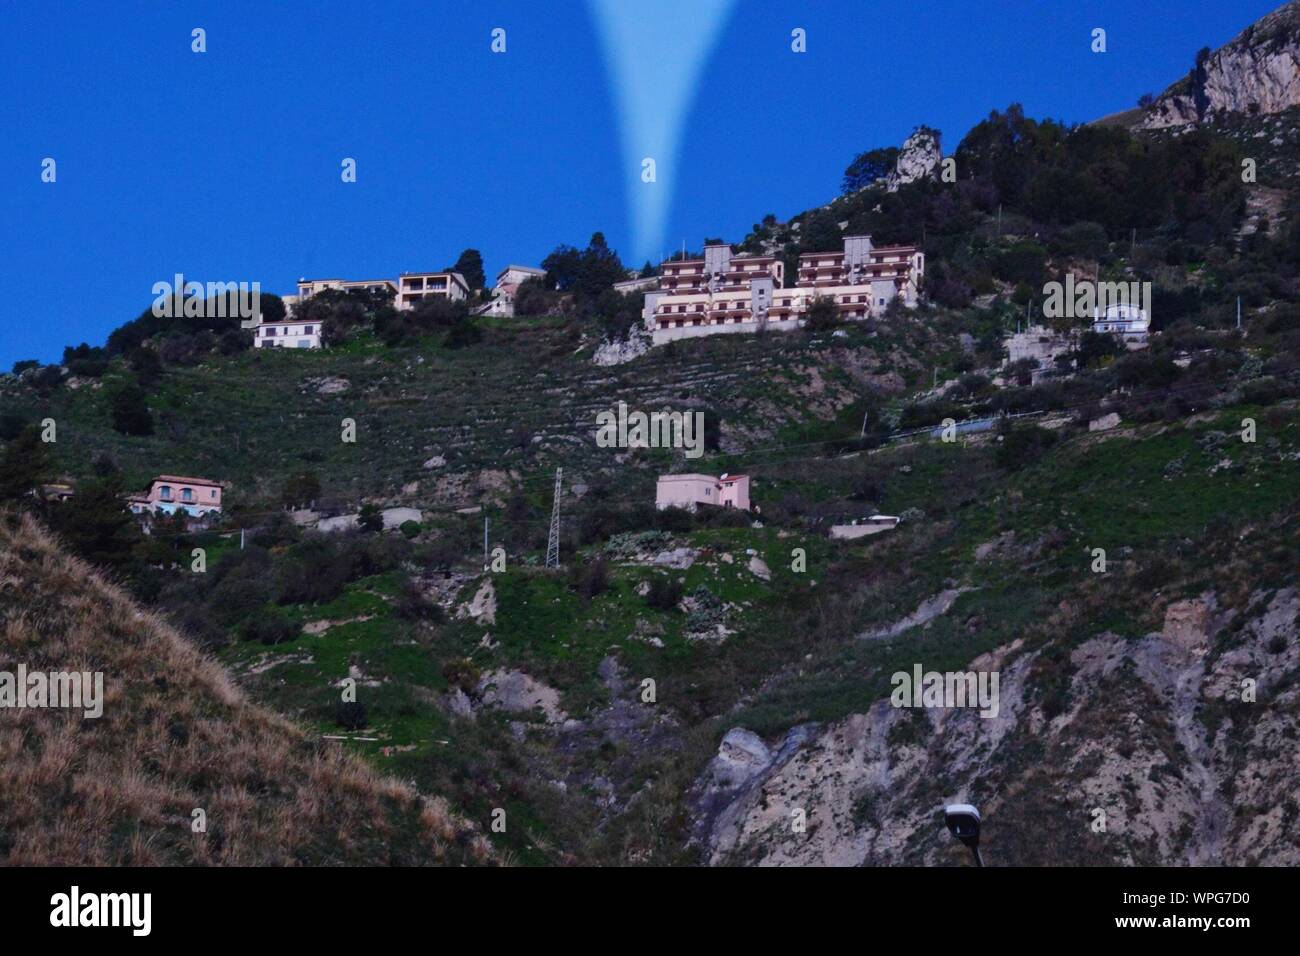 Lichtstrahl Aussenden von Gebäuden auf dem Berg Stockfoto